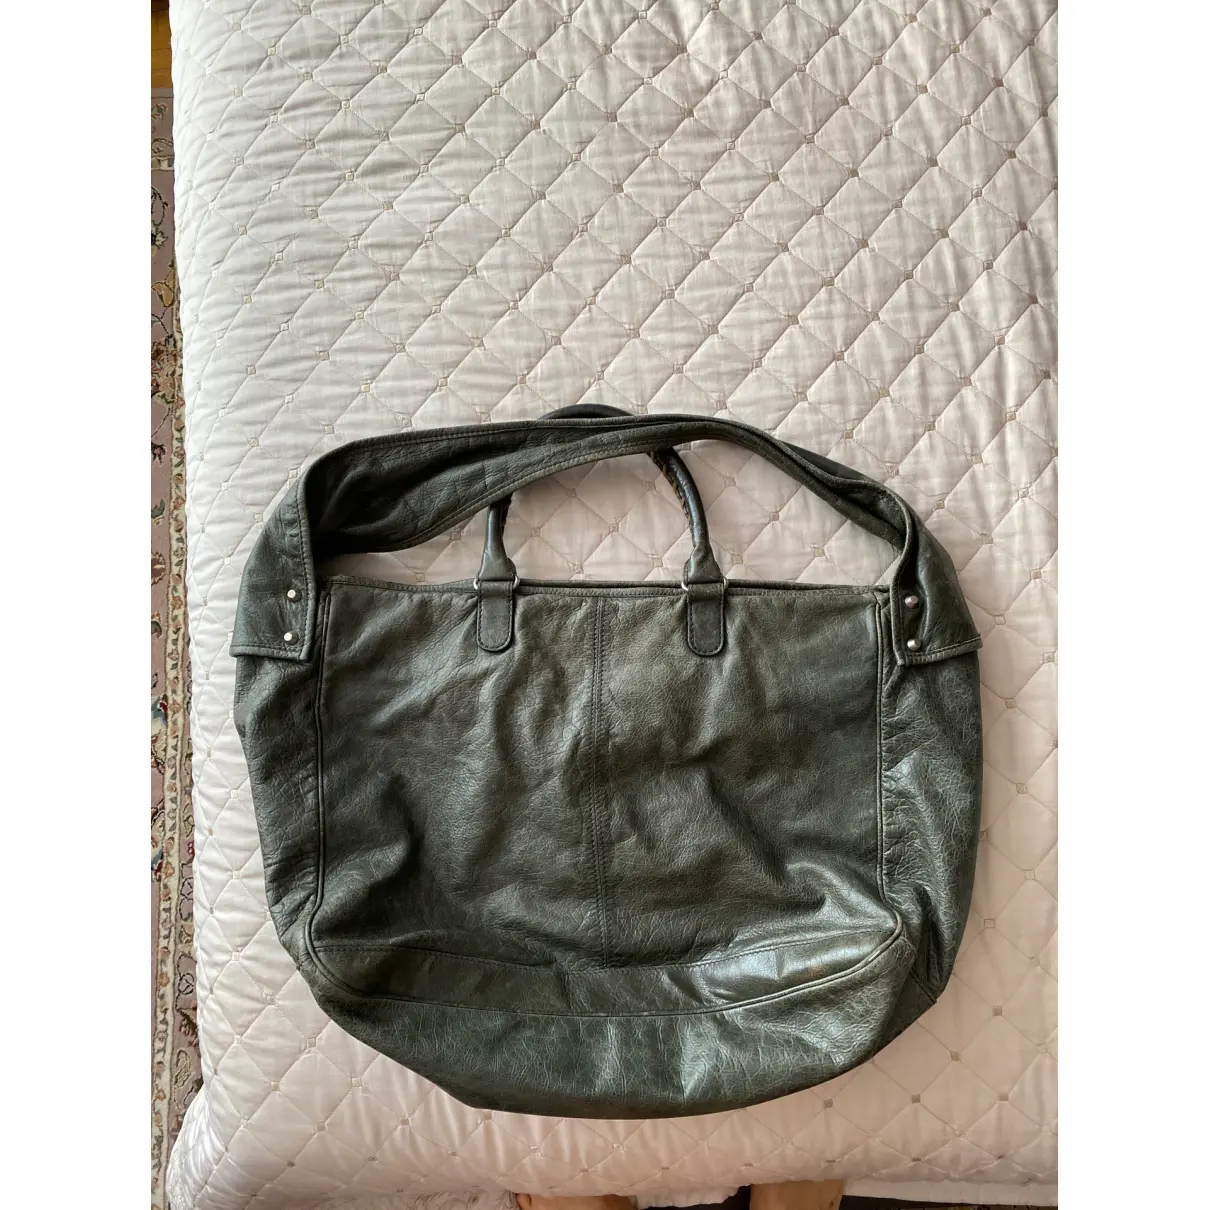 Buy Balenciaga Courier XL leather handbag online